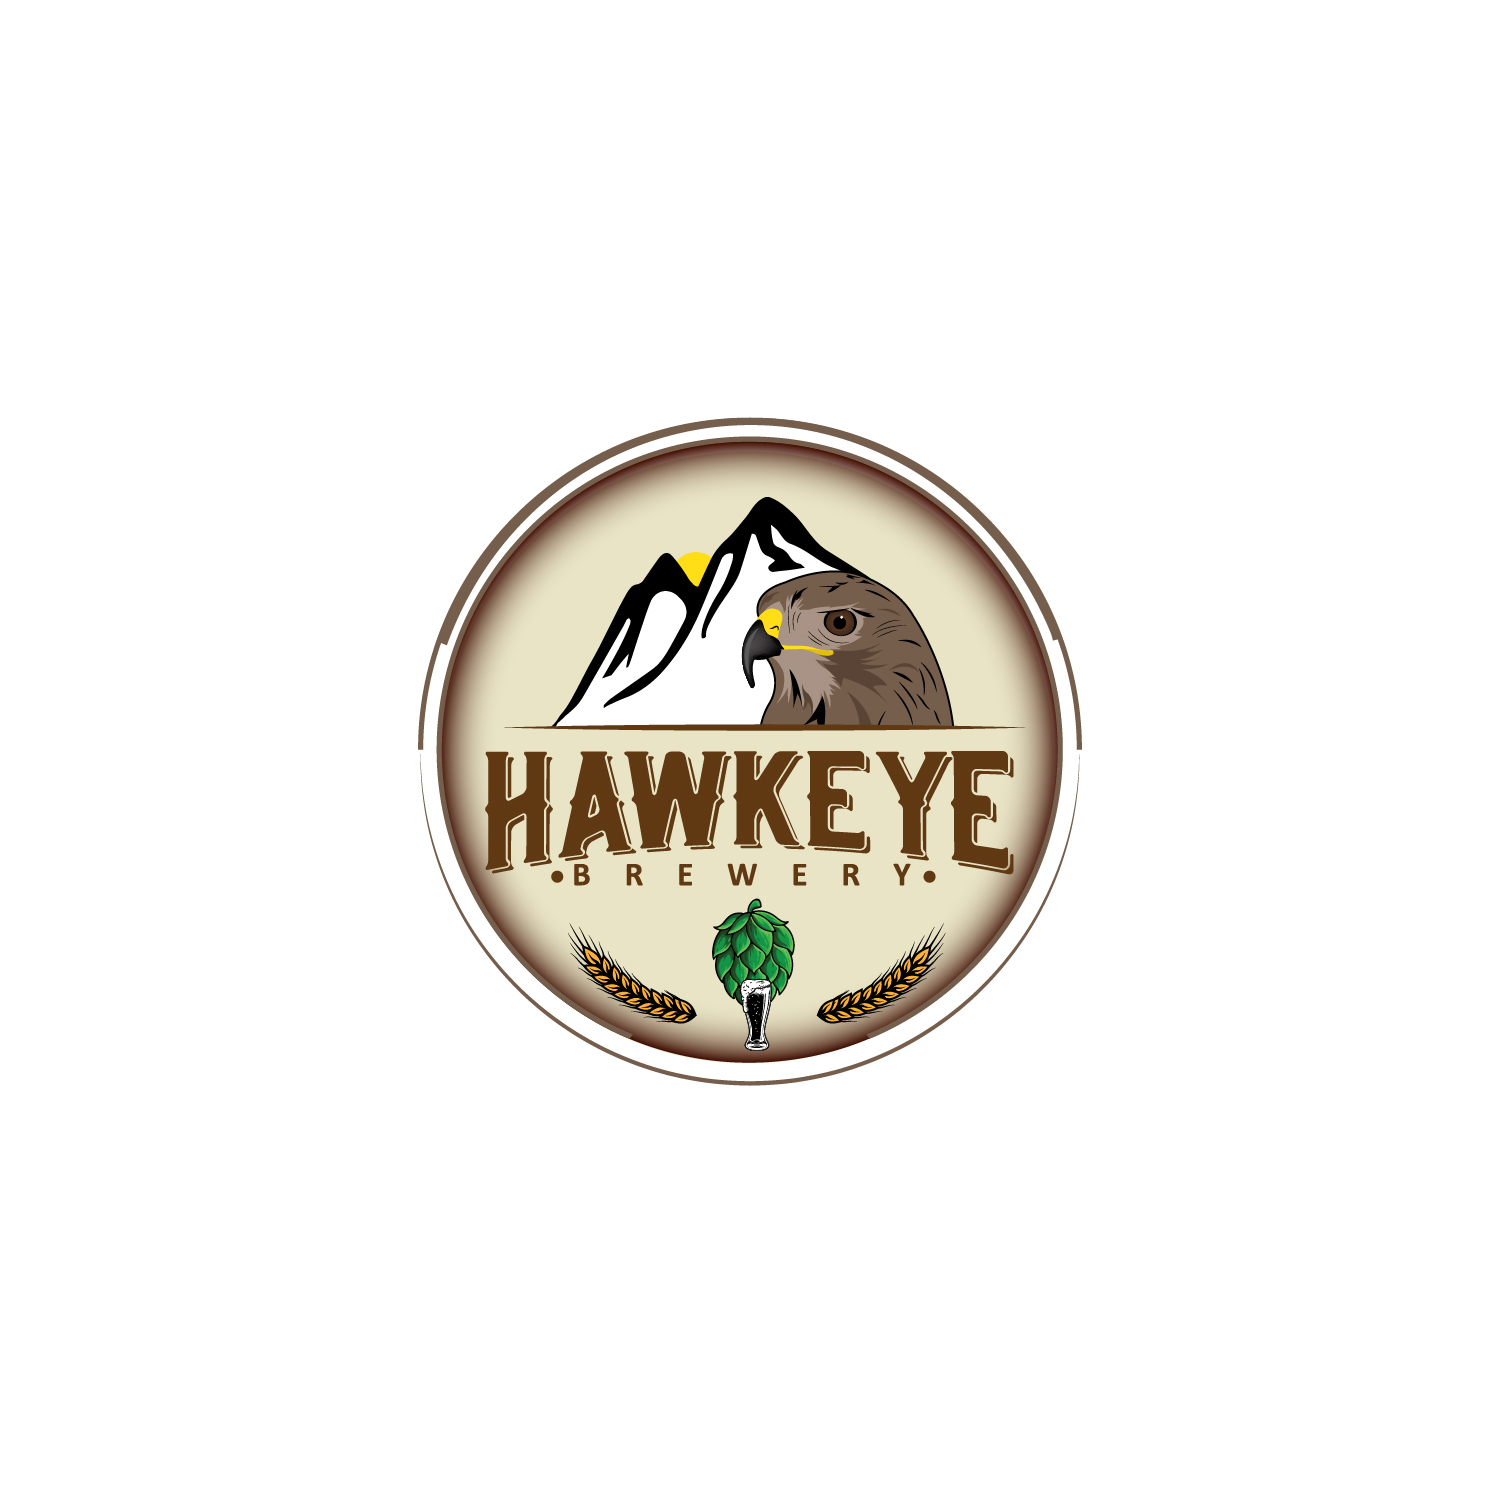 Hawkeye Brewery